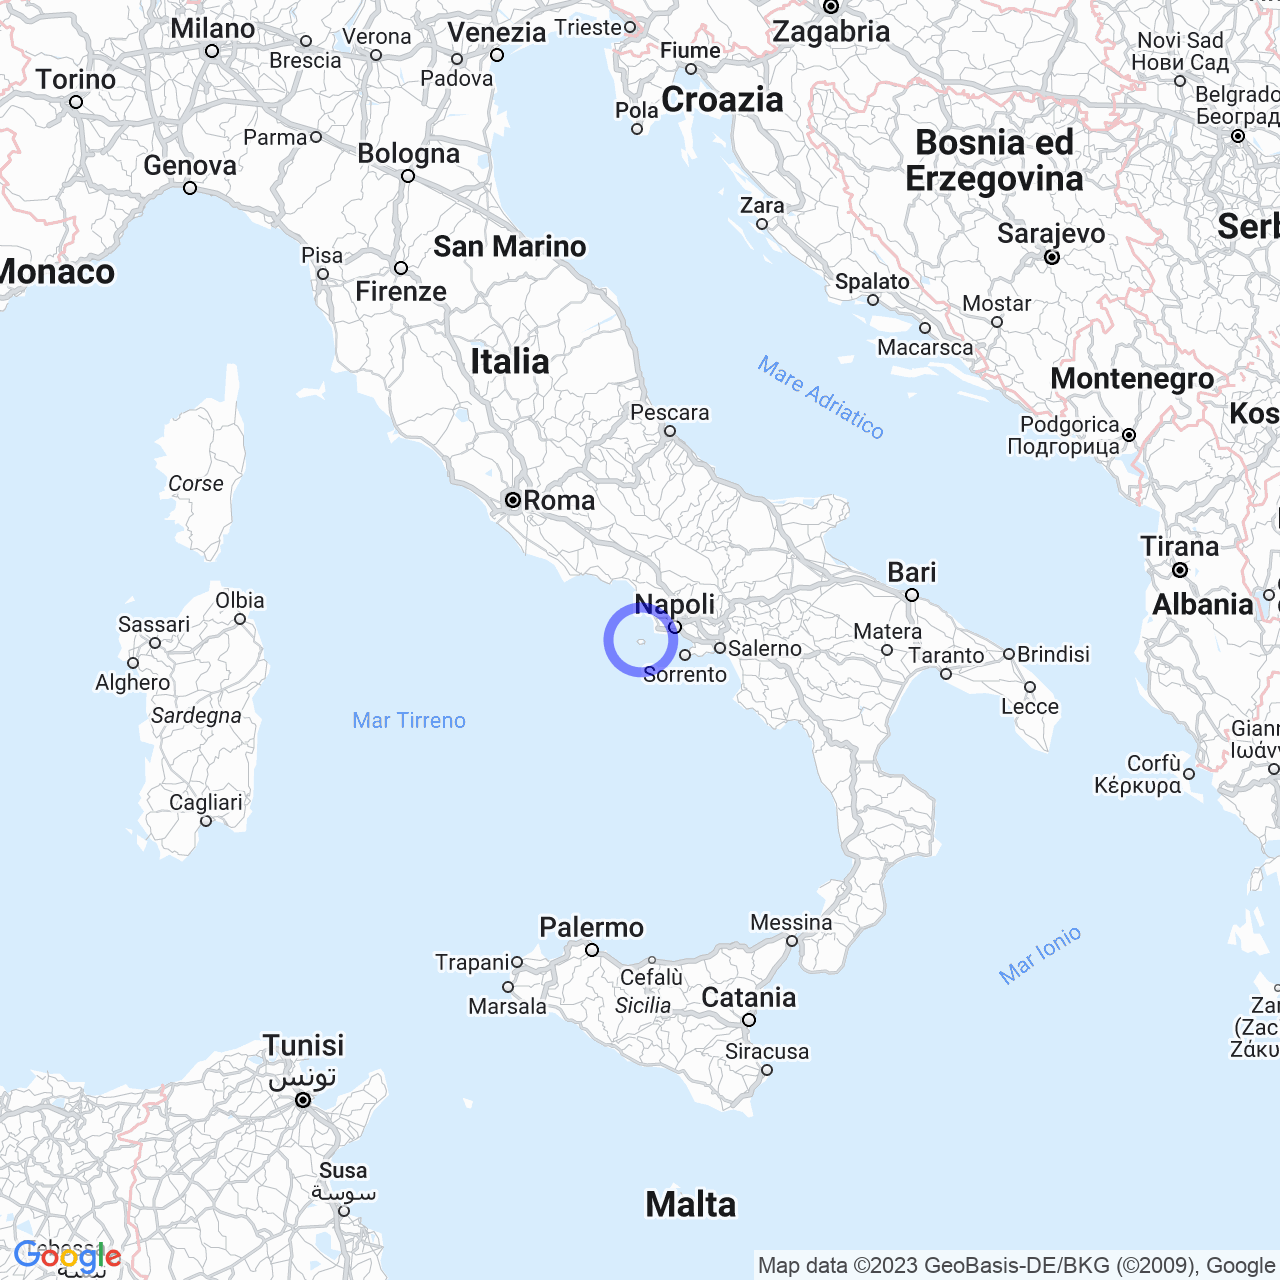 Lacco Ameno: the pearl of Ischia.